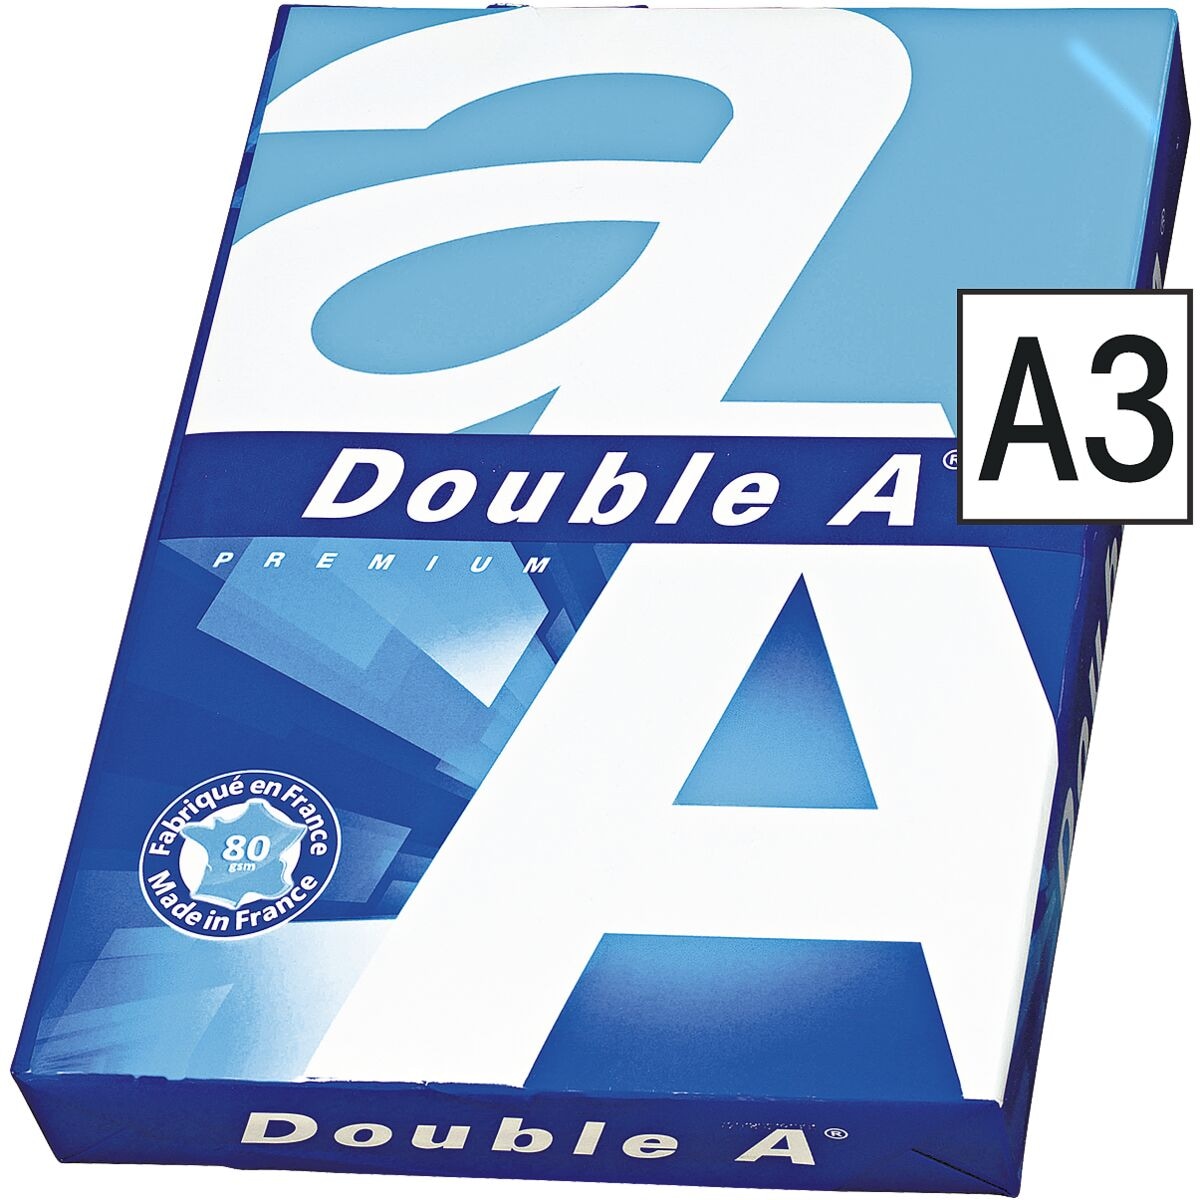 A3 Double A Premium - 500 Blatt gesamt